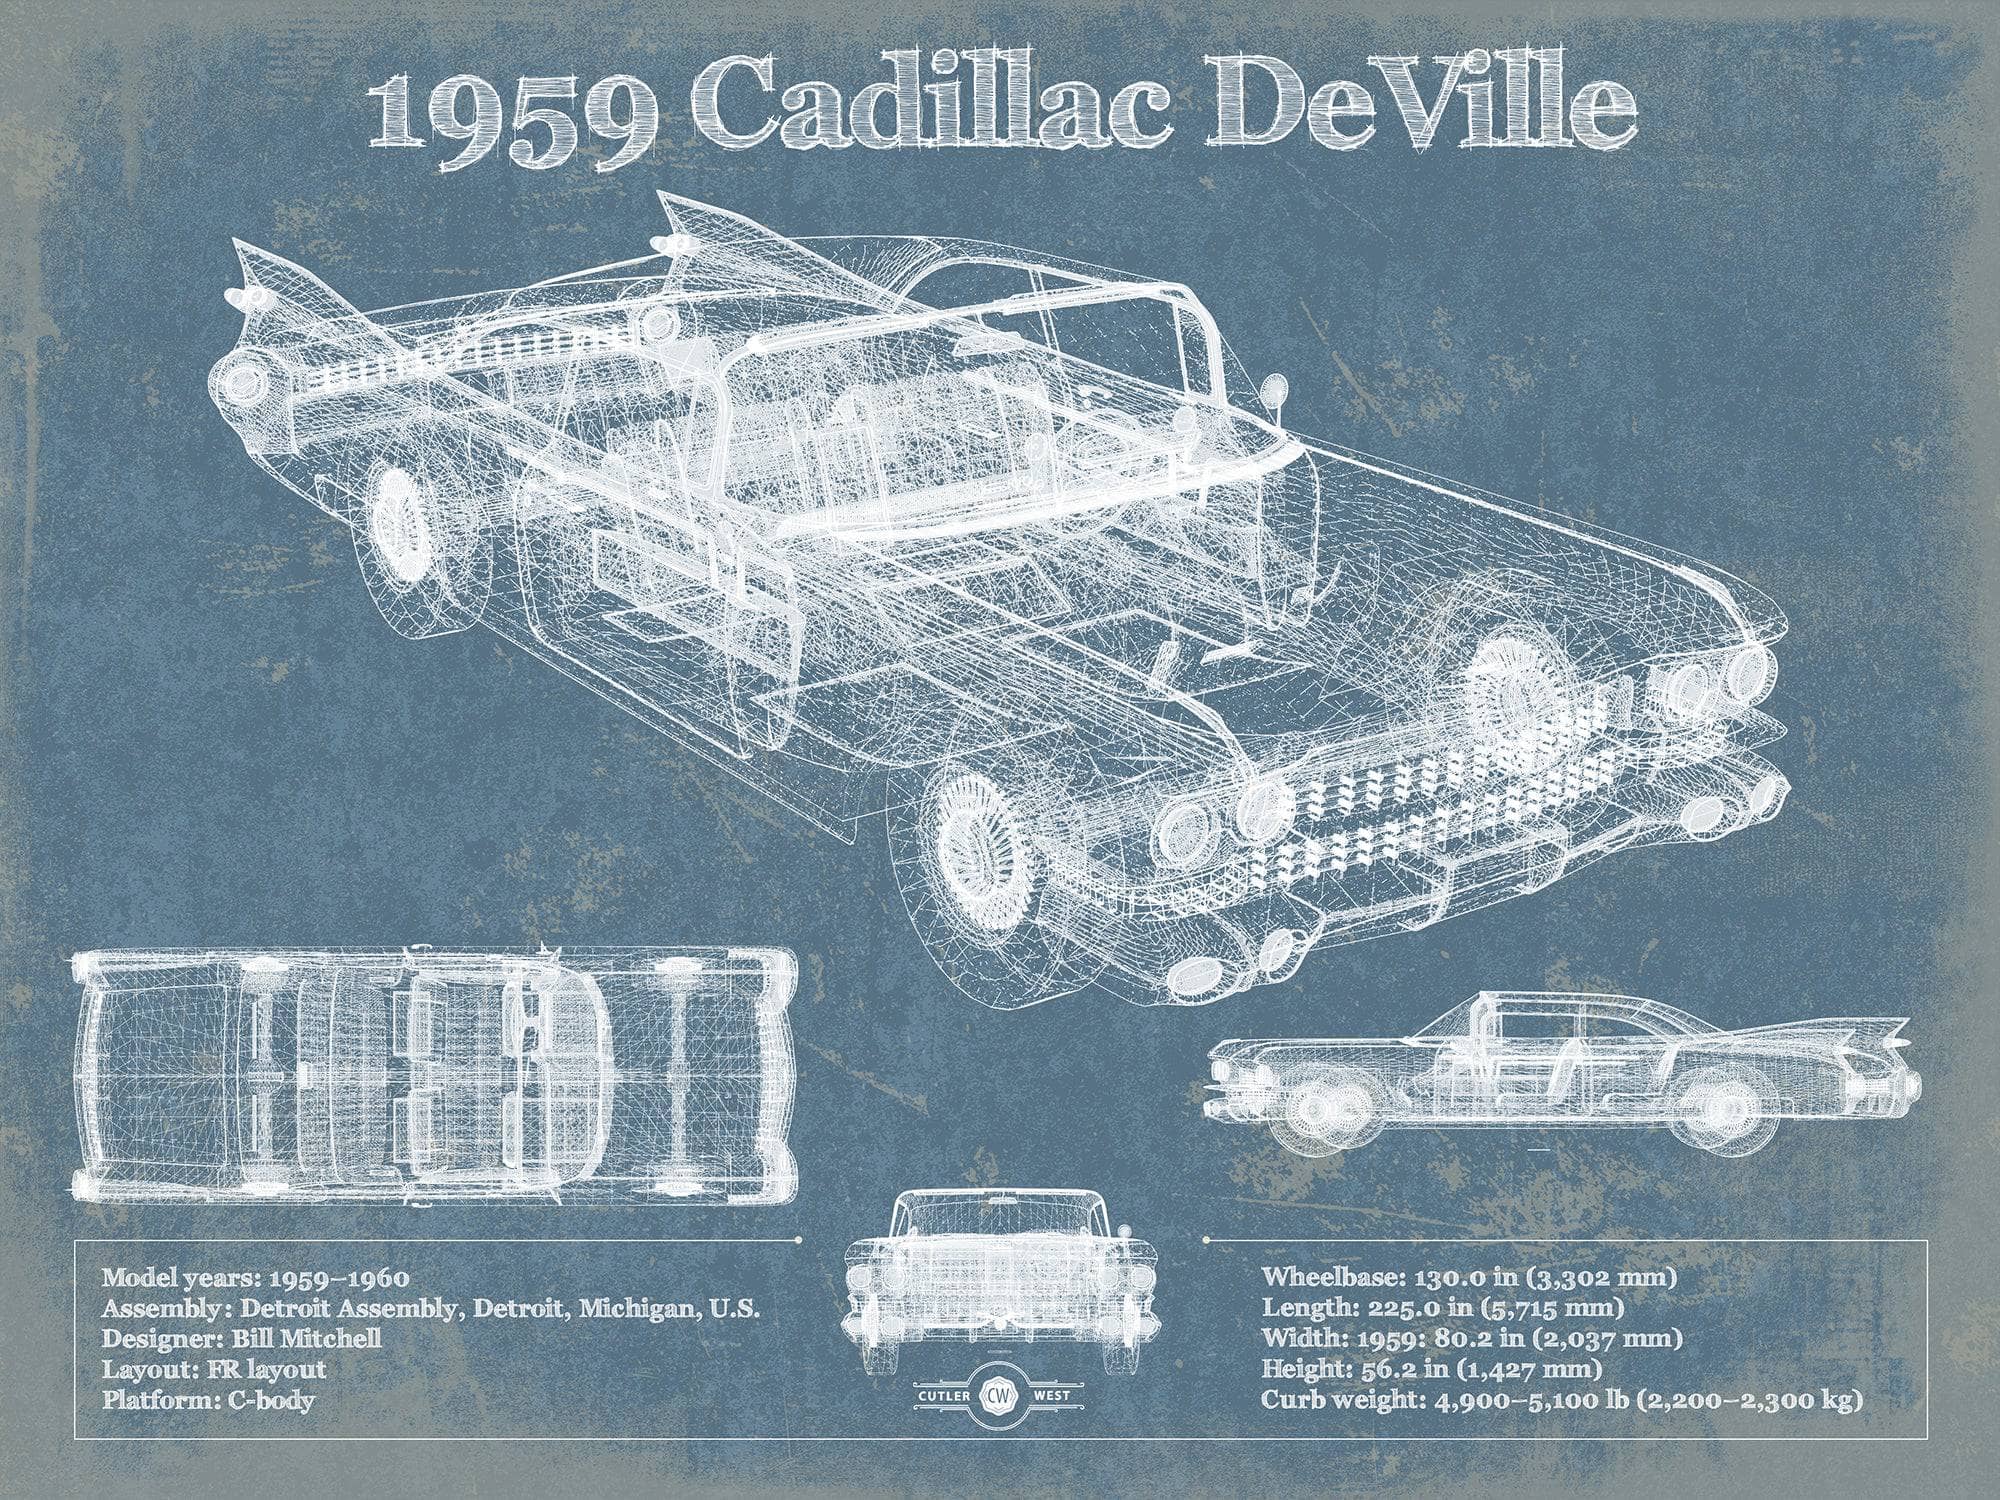 1959 Cadillac Coupe de Ville Blueprint Vintage Auto Print